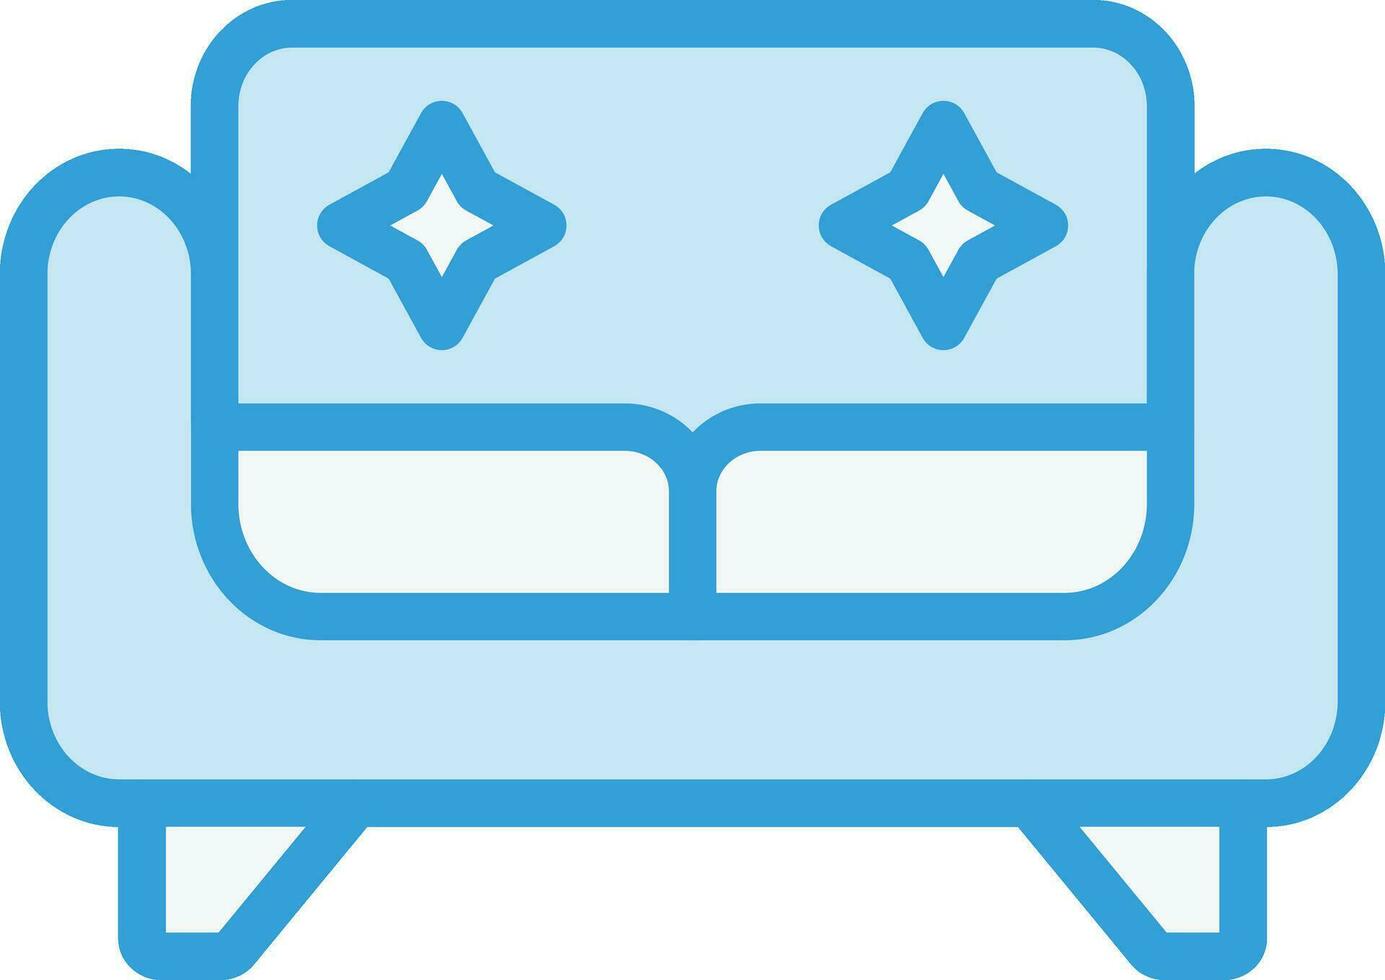 ilustração de design de ícone de vetor de sofá